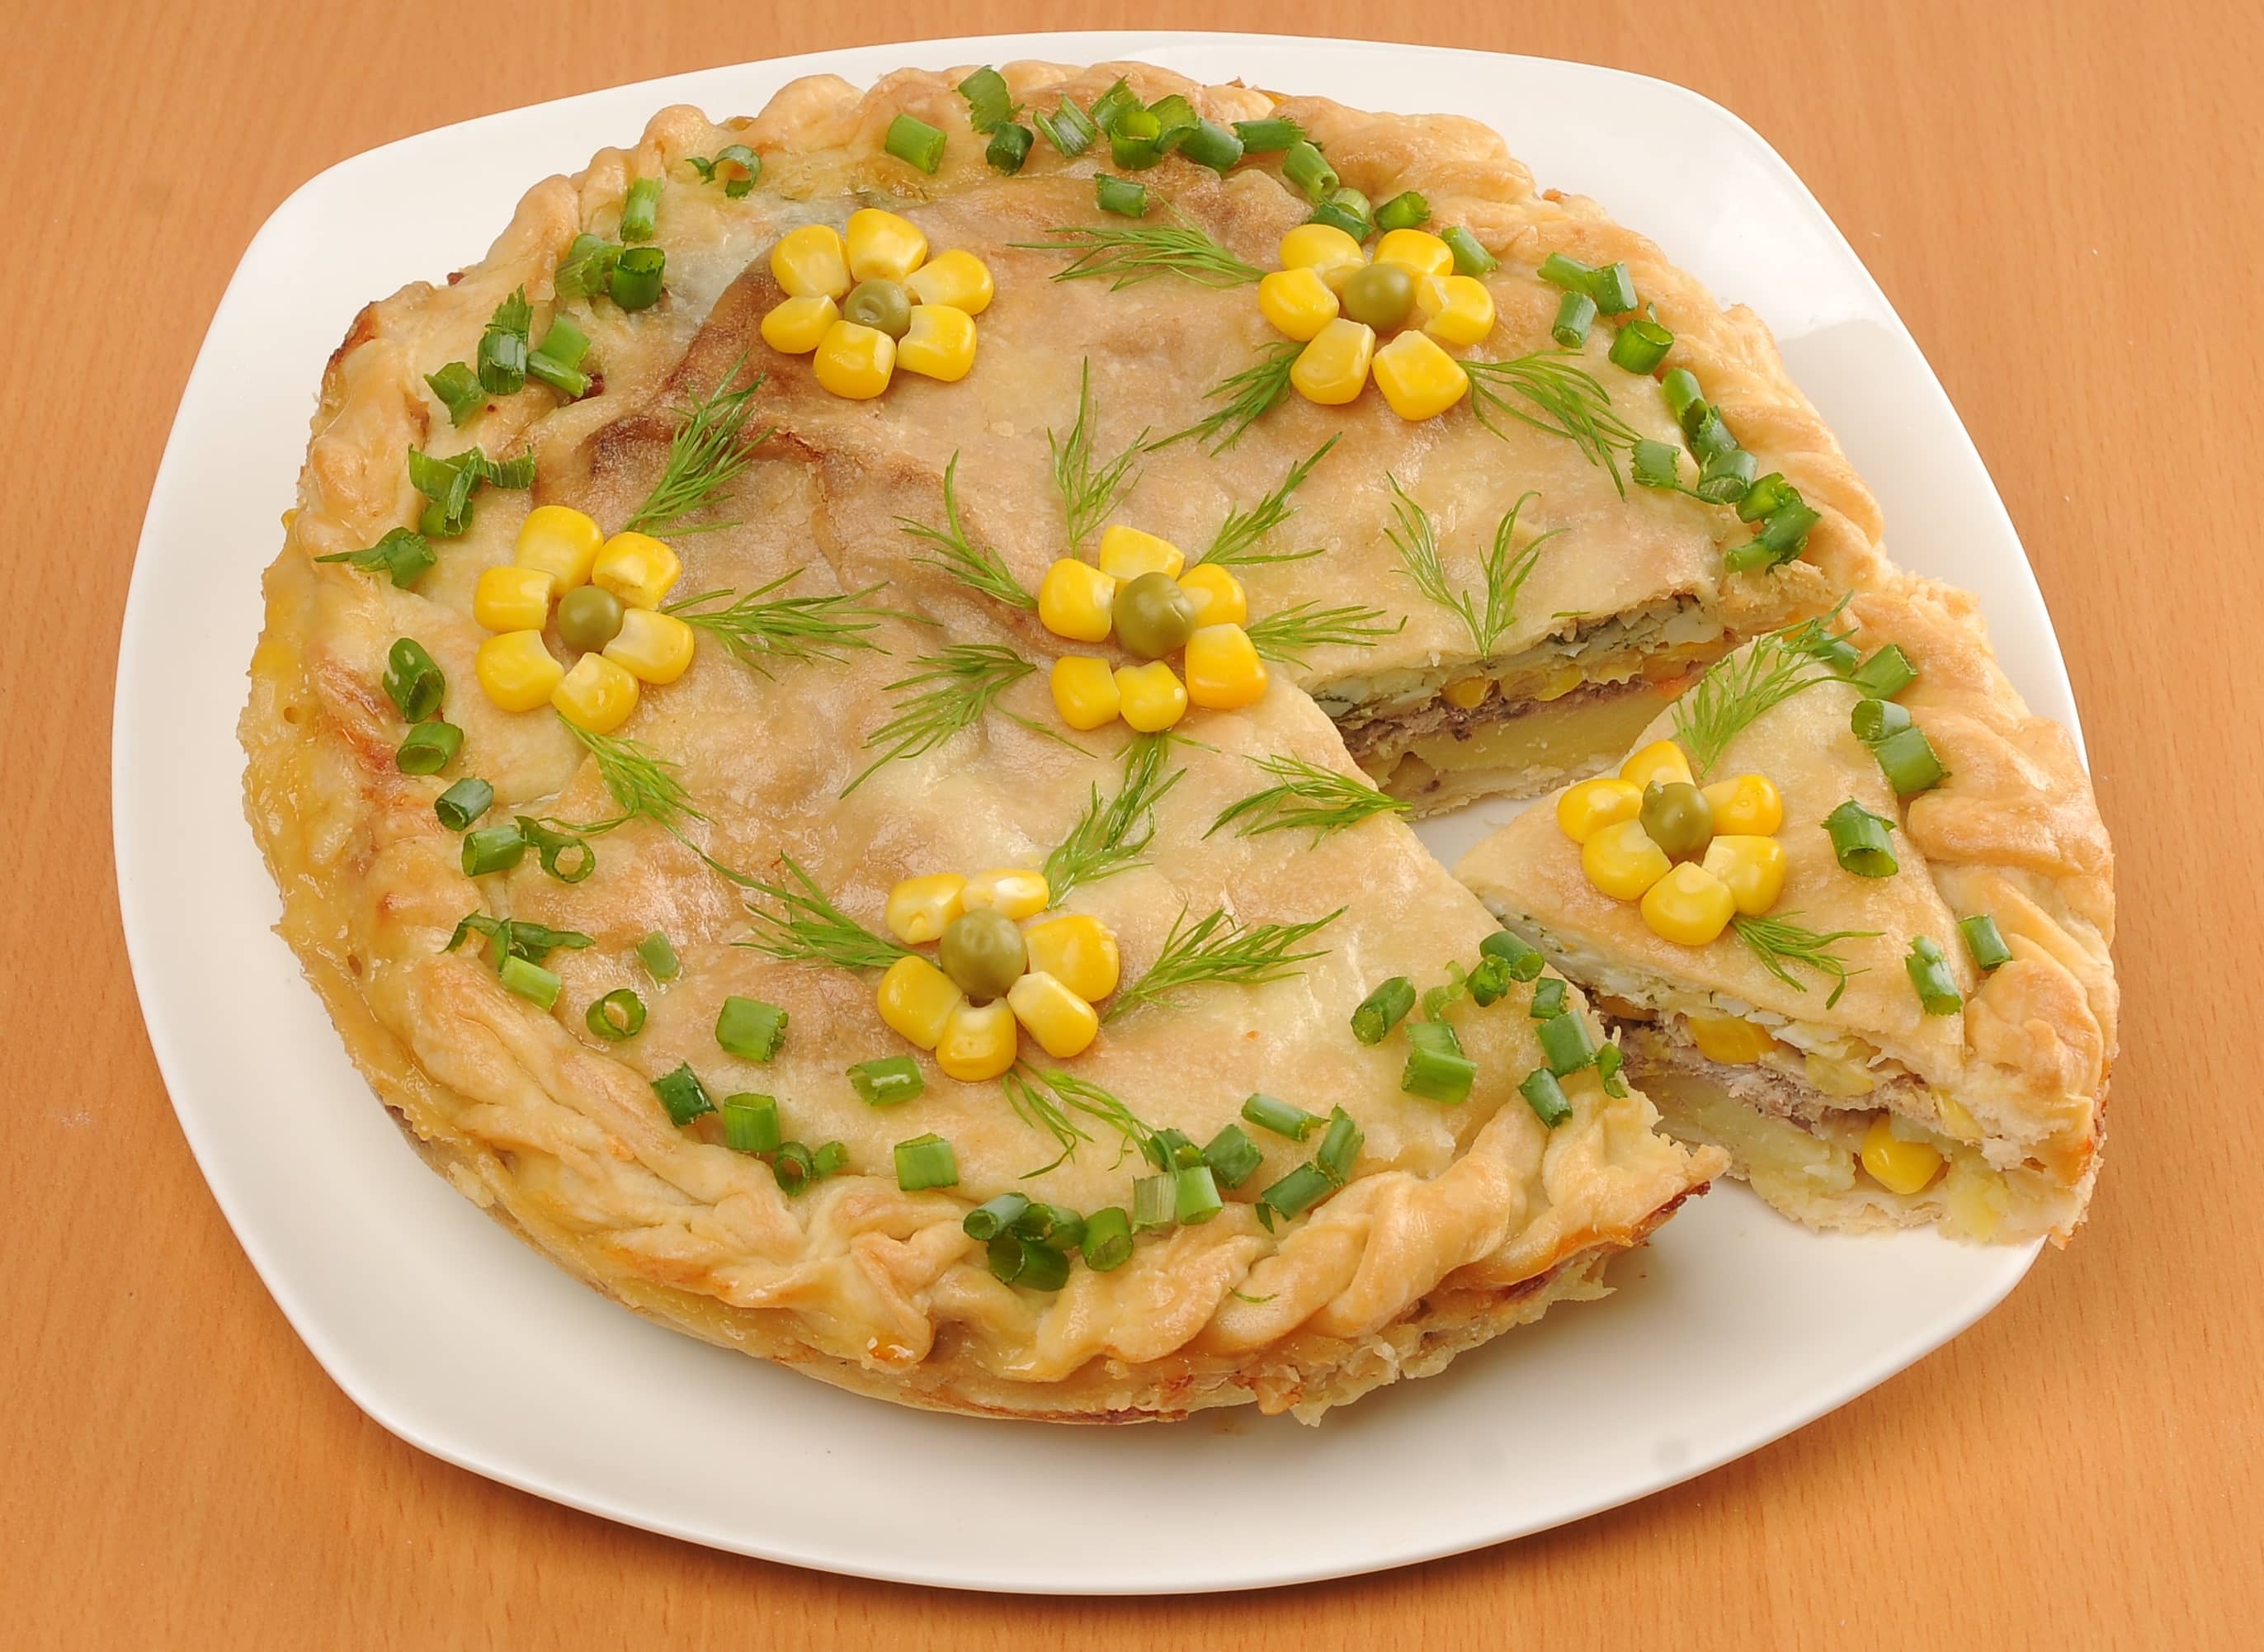 Рибний пиріг зі свіжої риби   10 смачних рецептів